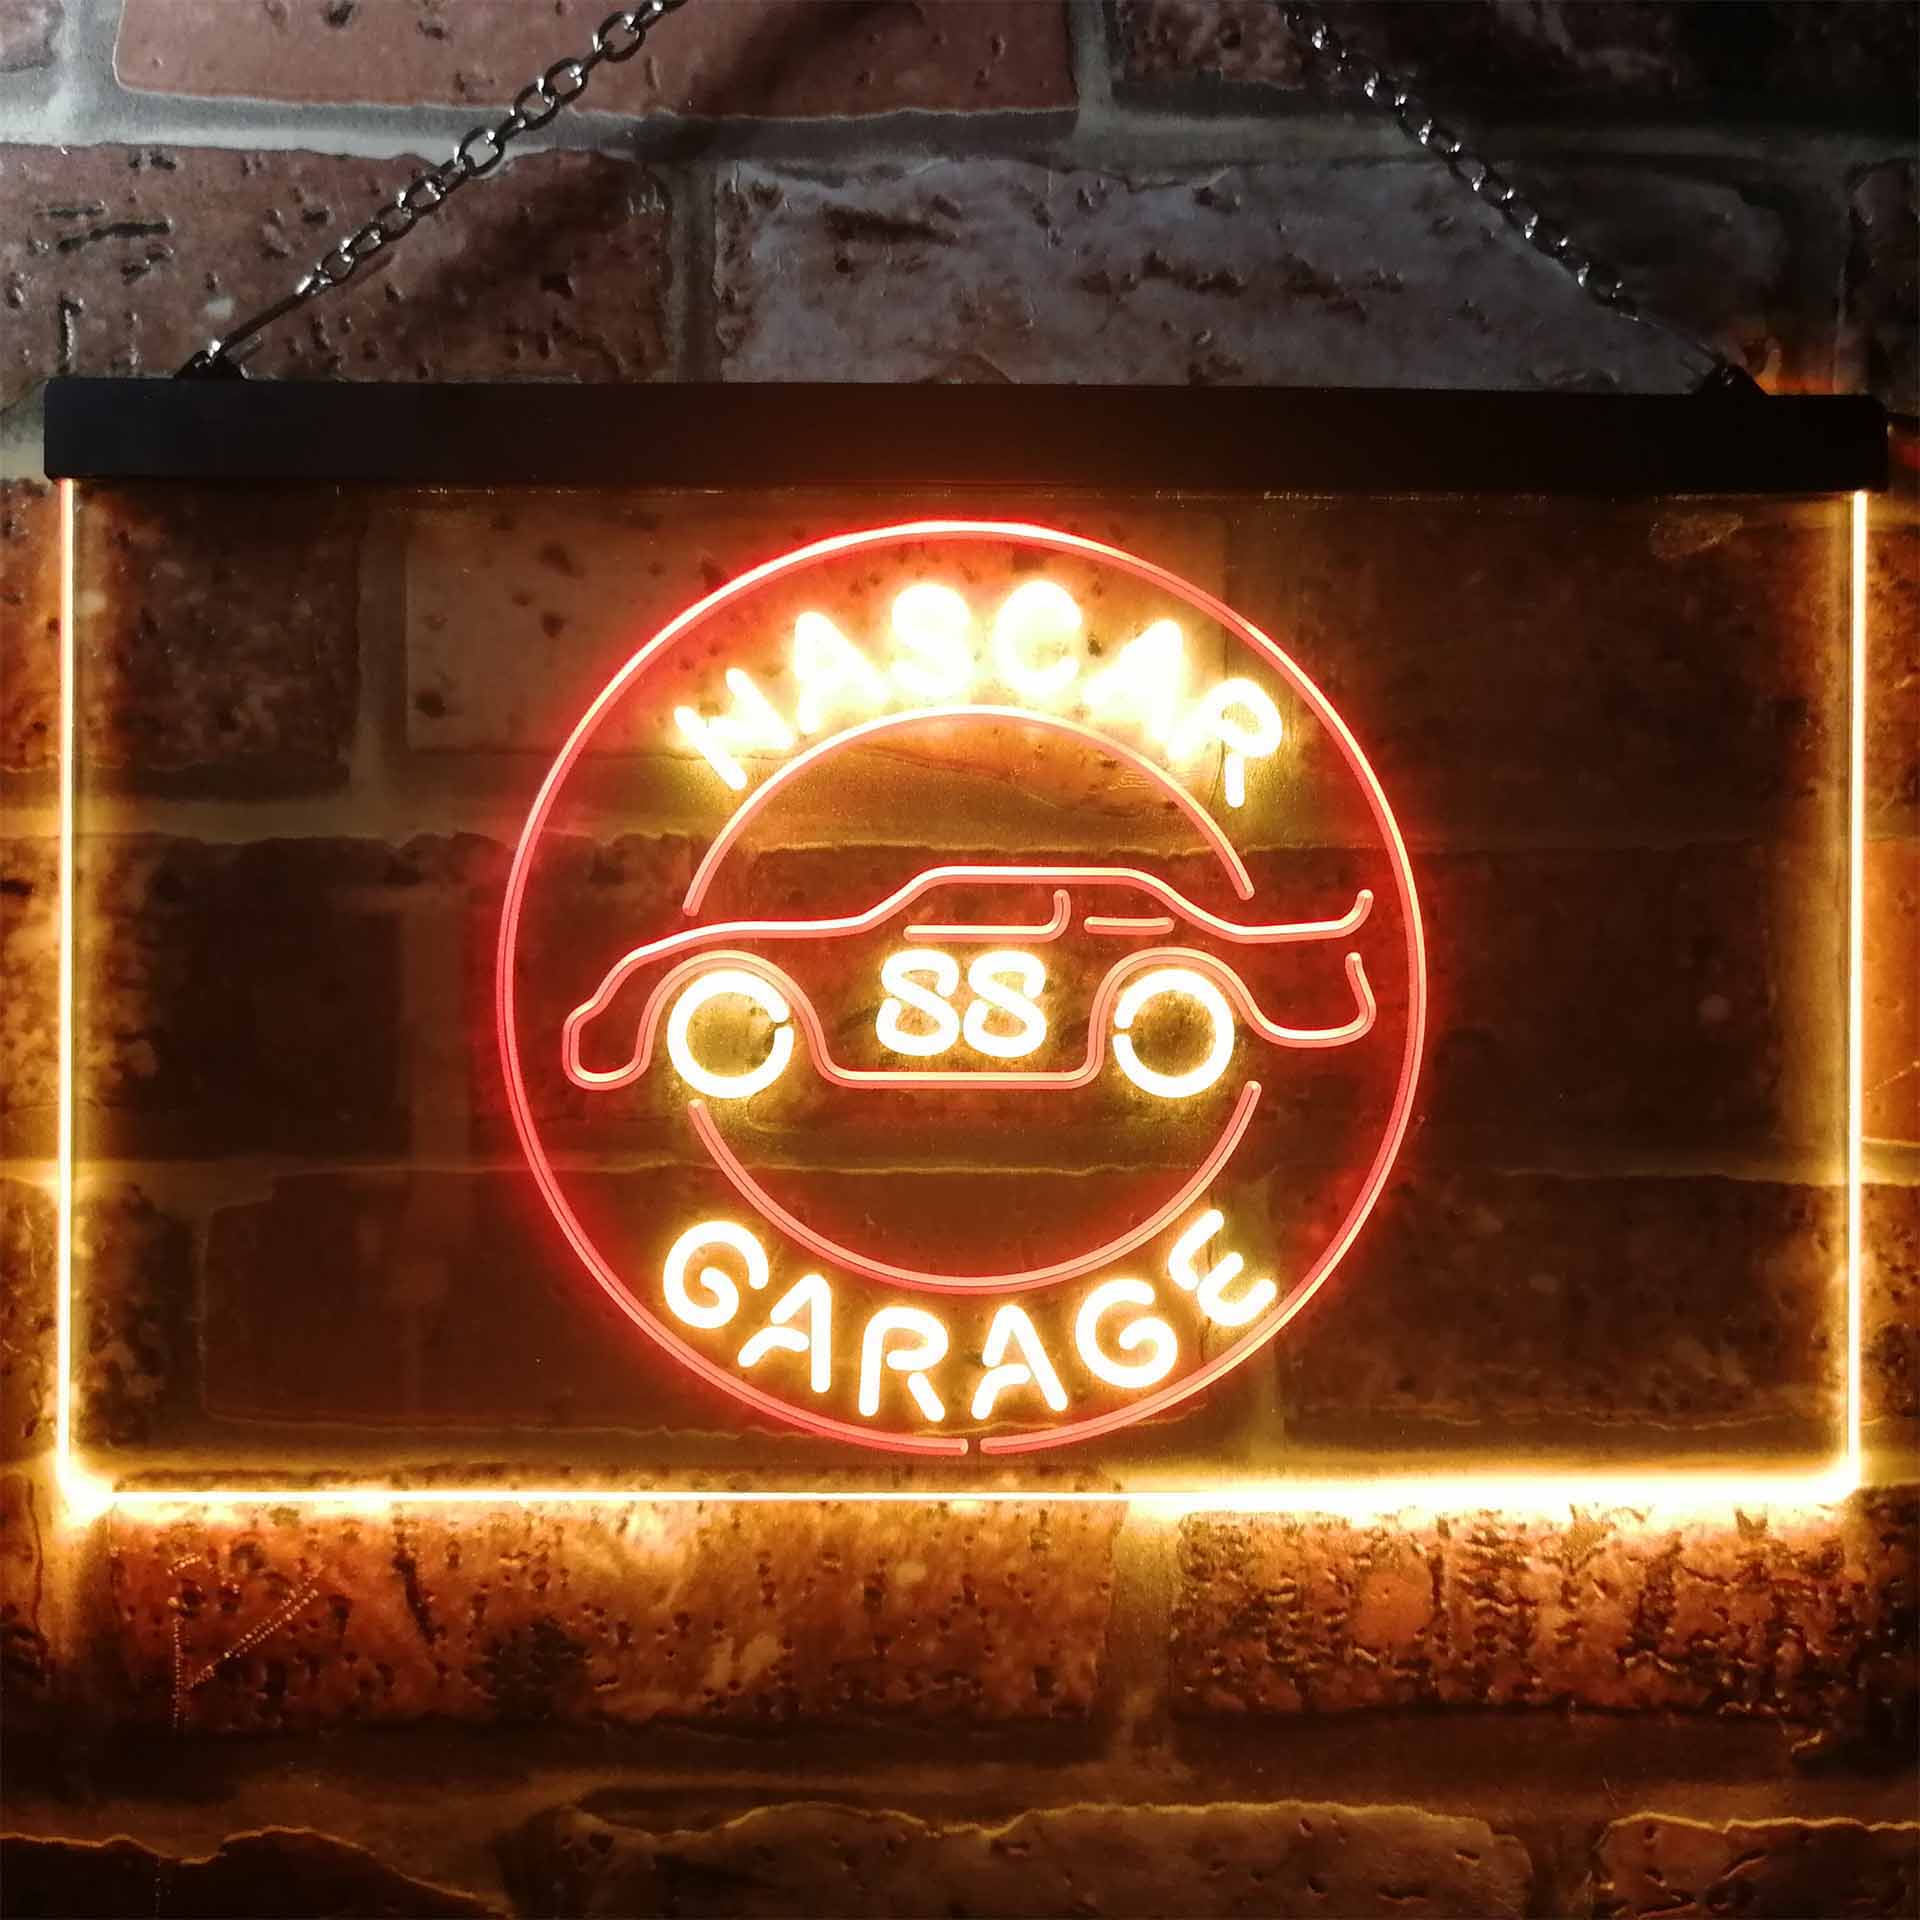 Nascar 88 Garage Dale Jr. Neon LED Sign